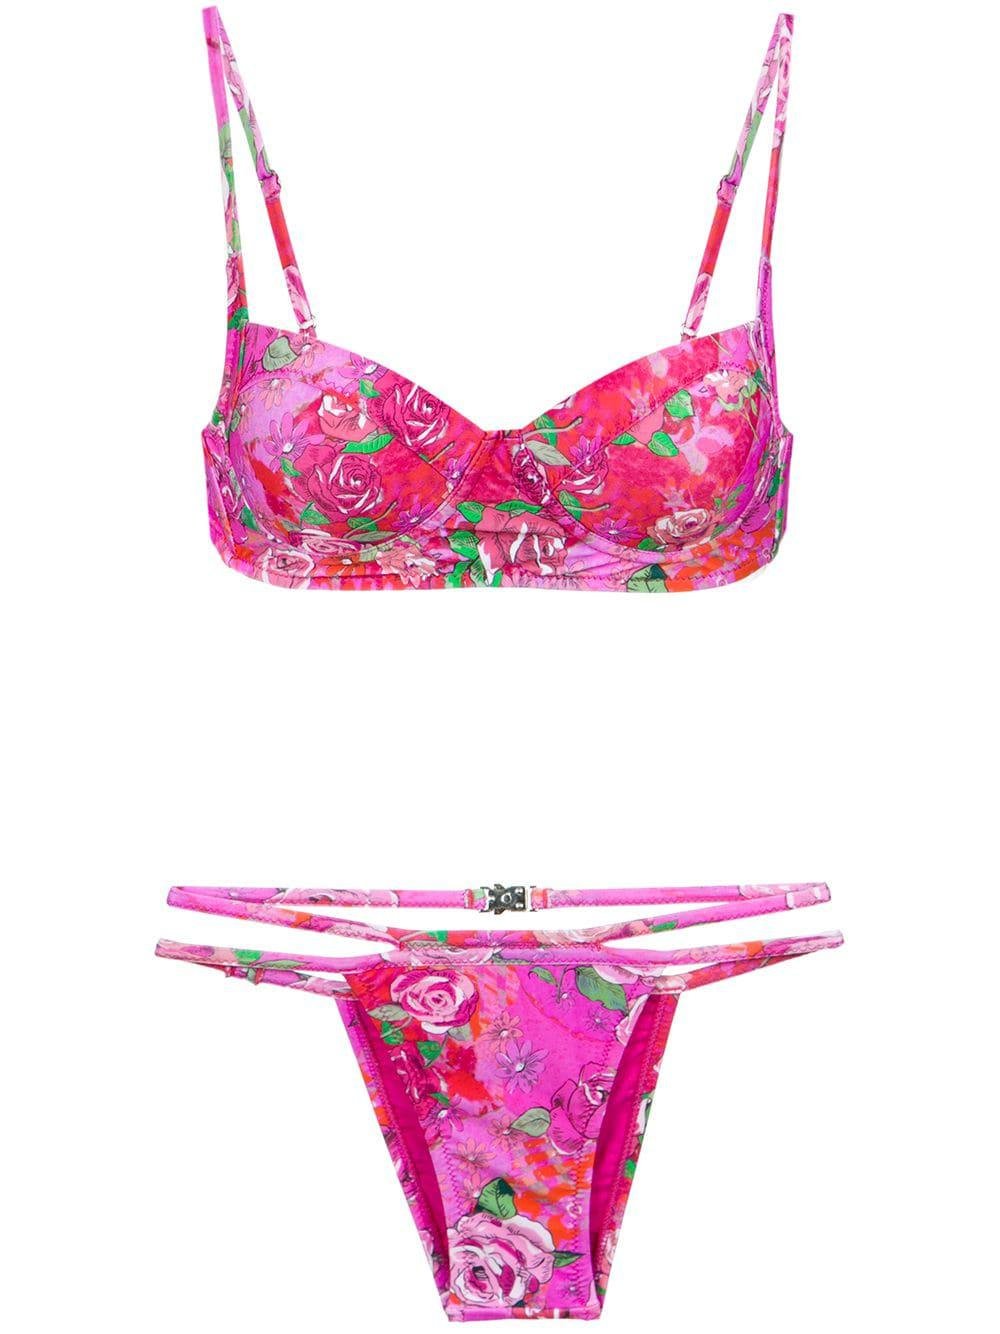 rose print bikini set by AMIR SLAMA